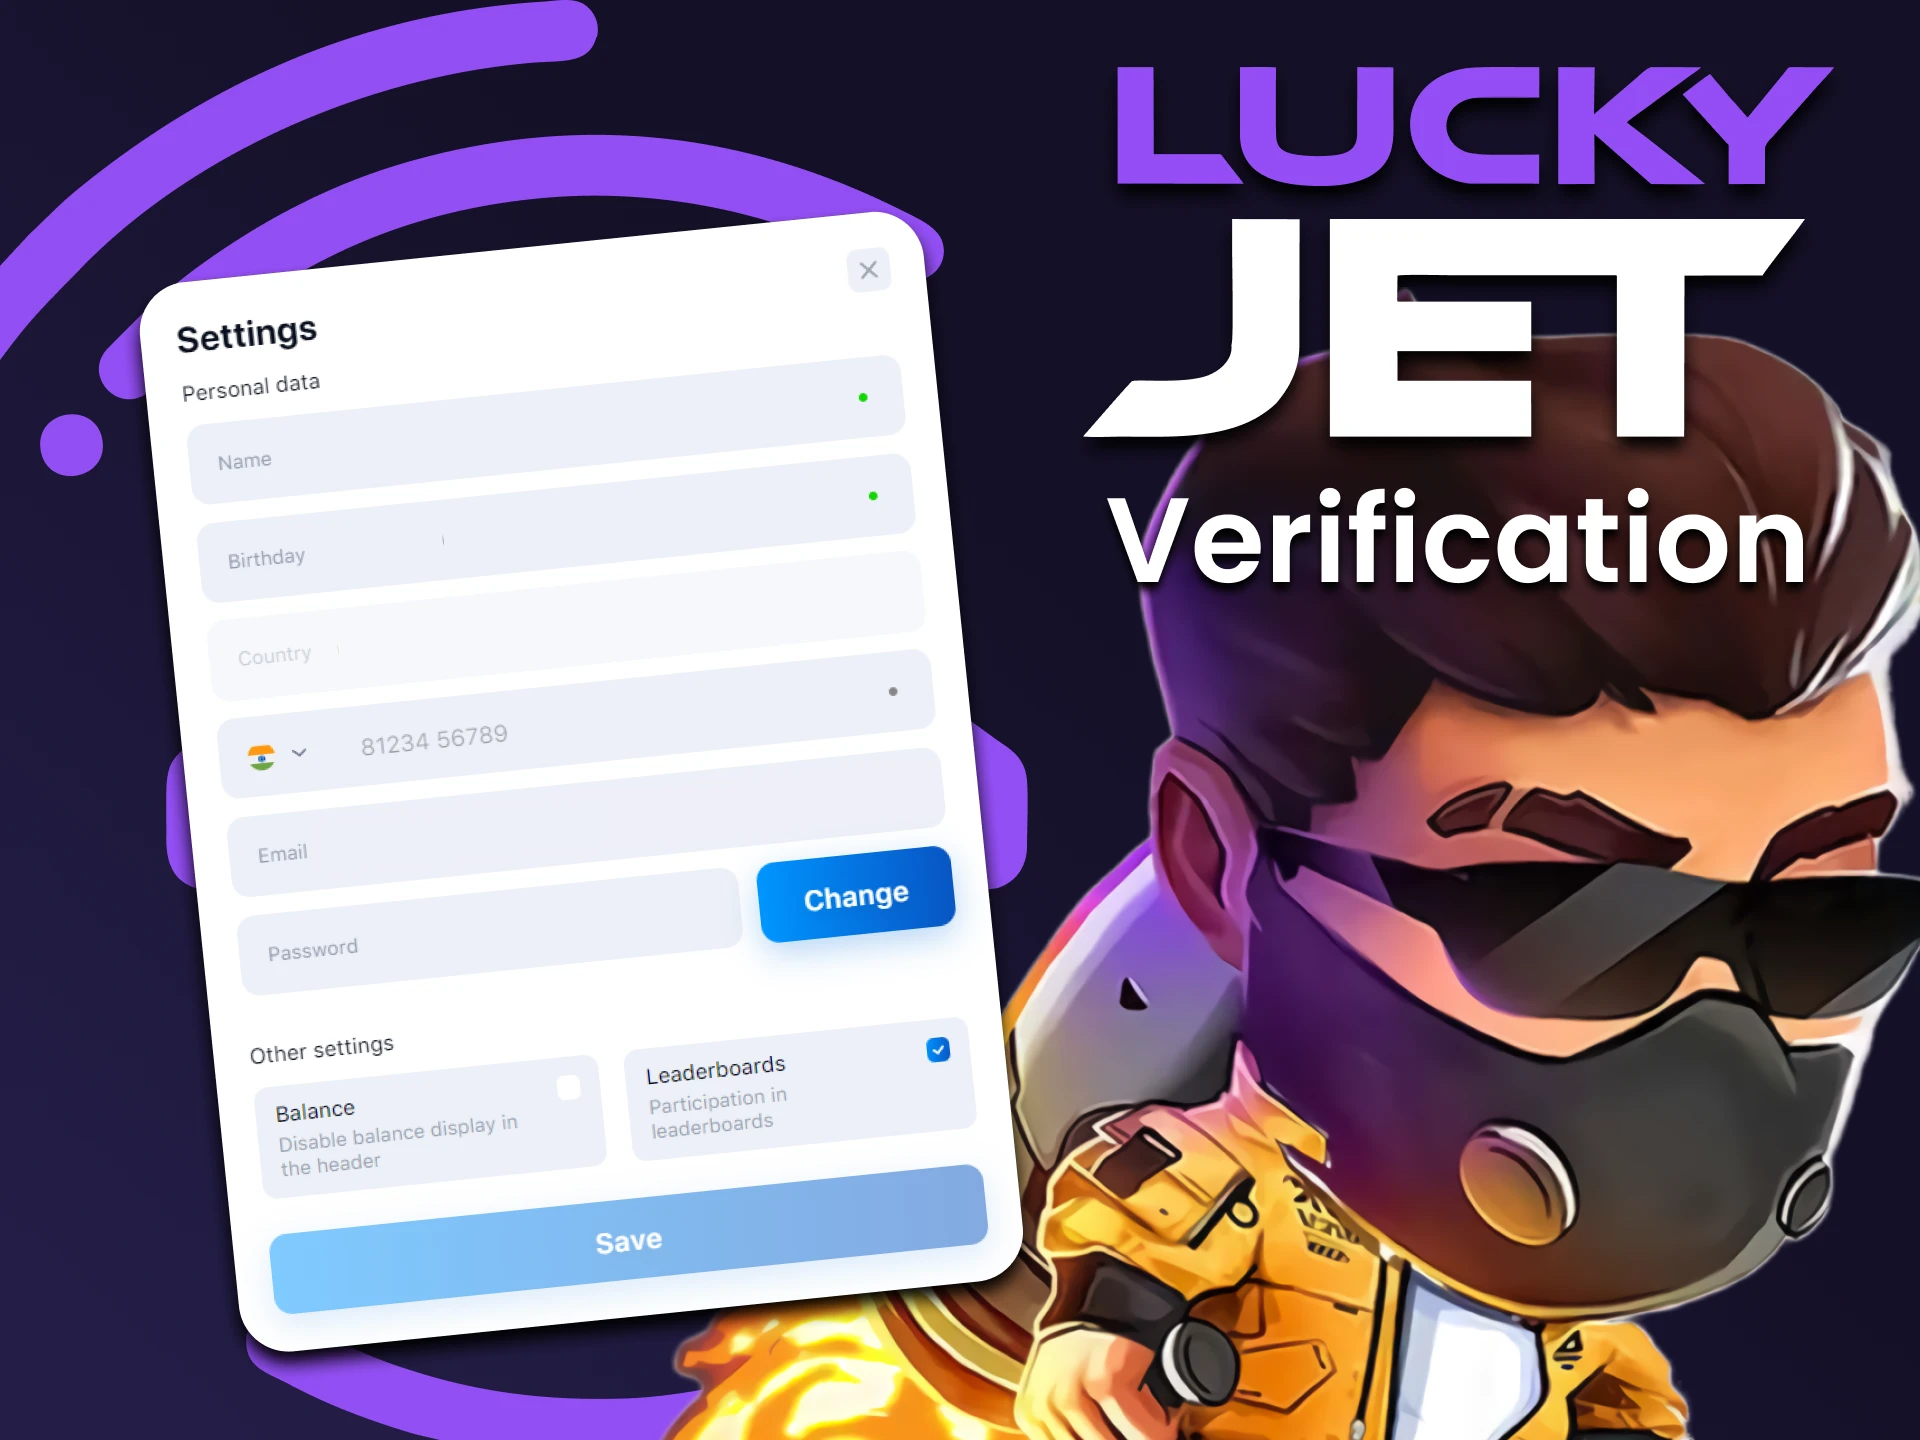 Remplissez vos informations personnelles pour jouer à Lucky Jet.